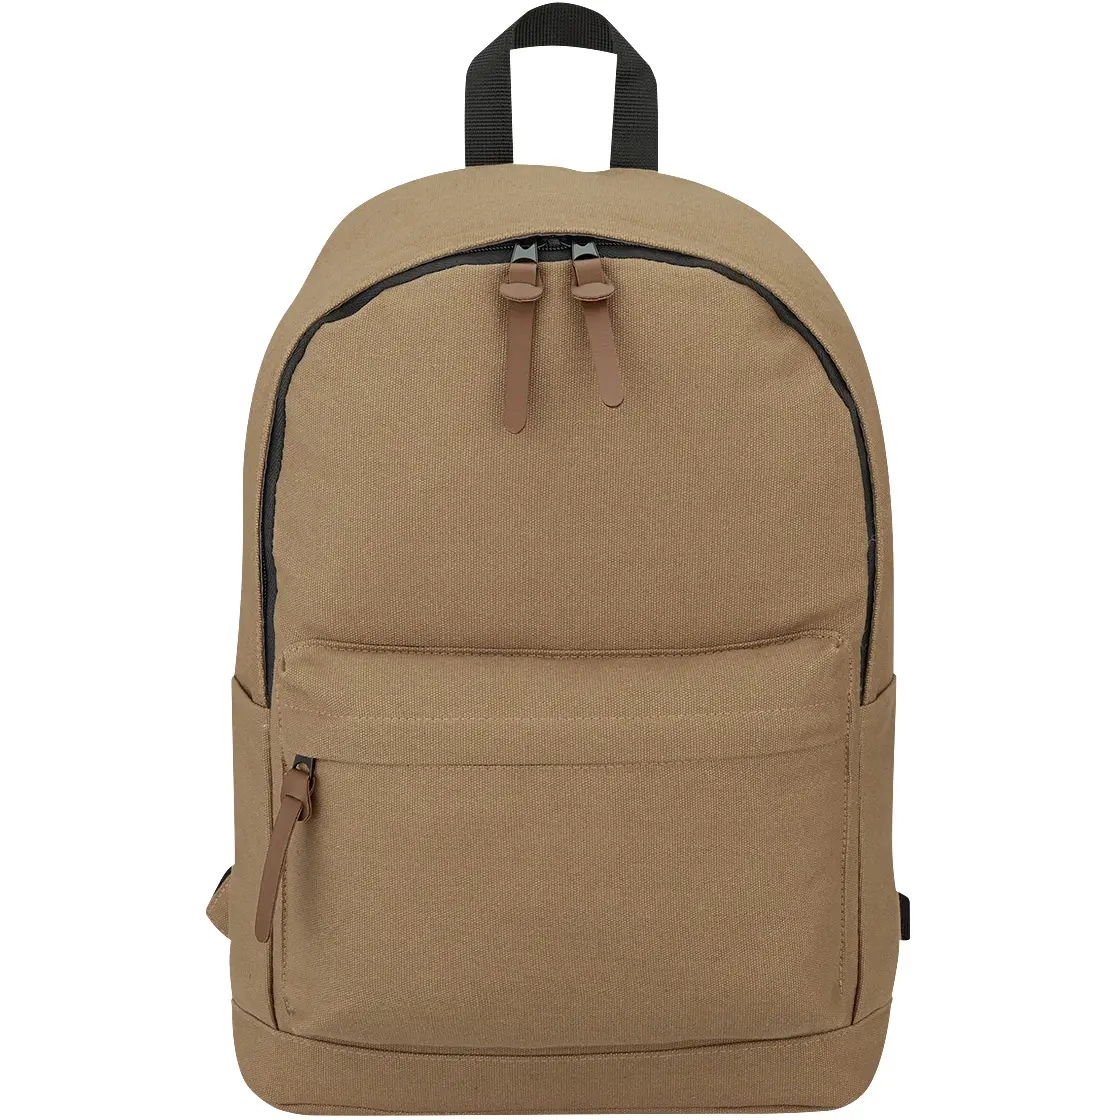 100-cotton-backpack-hq-522399.webp